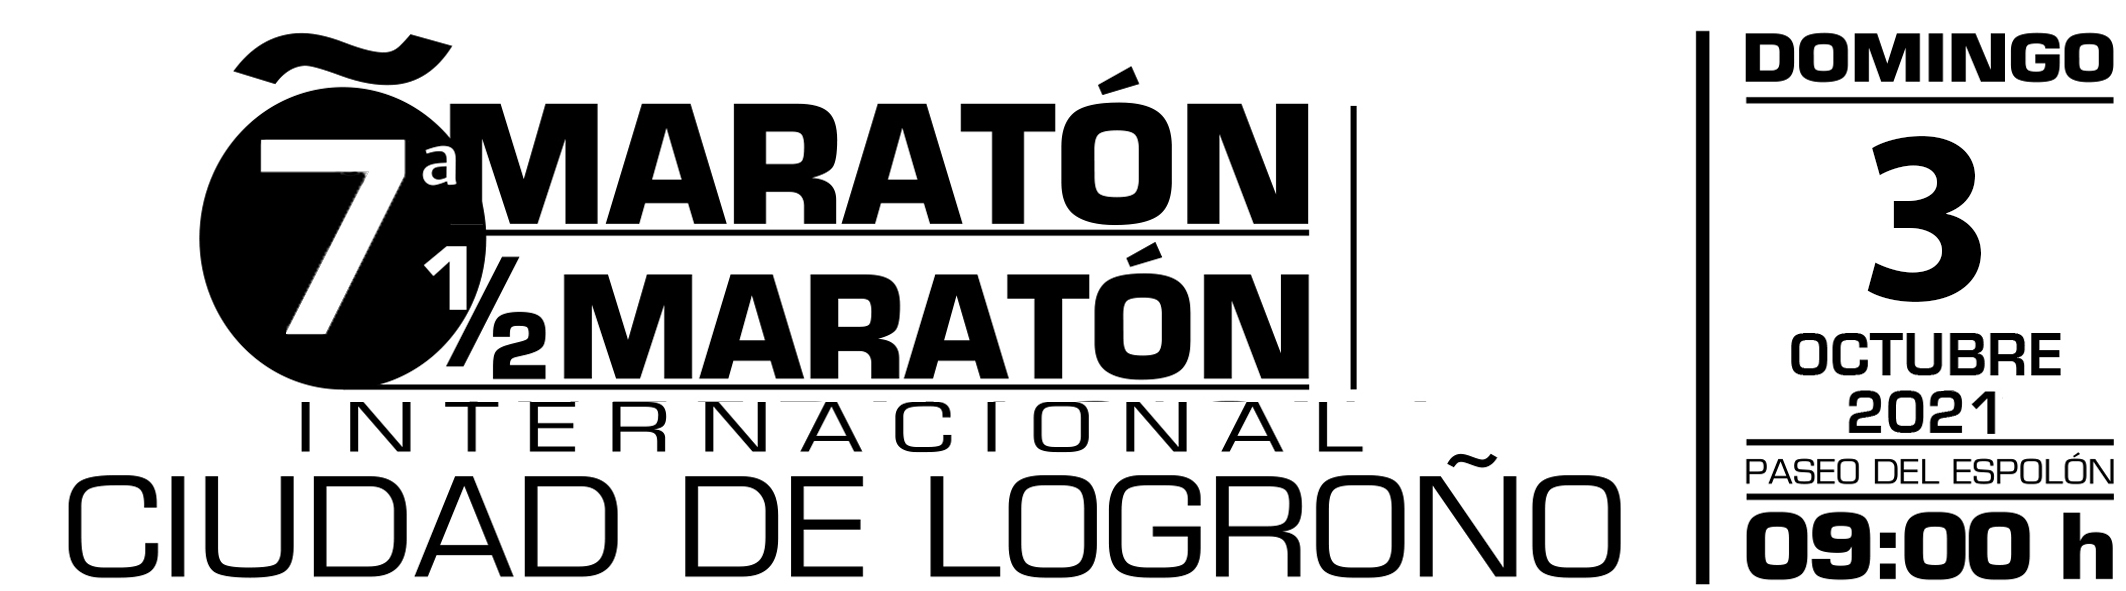 VI Maratón y 1/2 Maratón Adidas Ciudad de Logroño - 6 octubre 2019